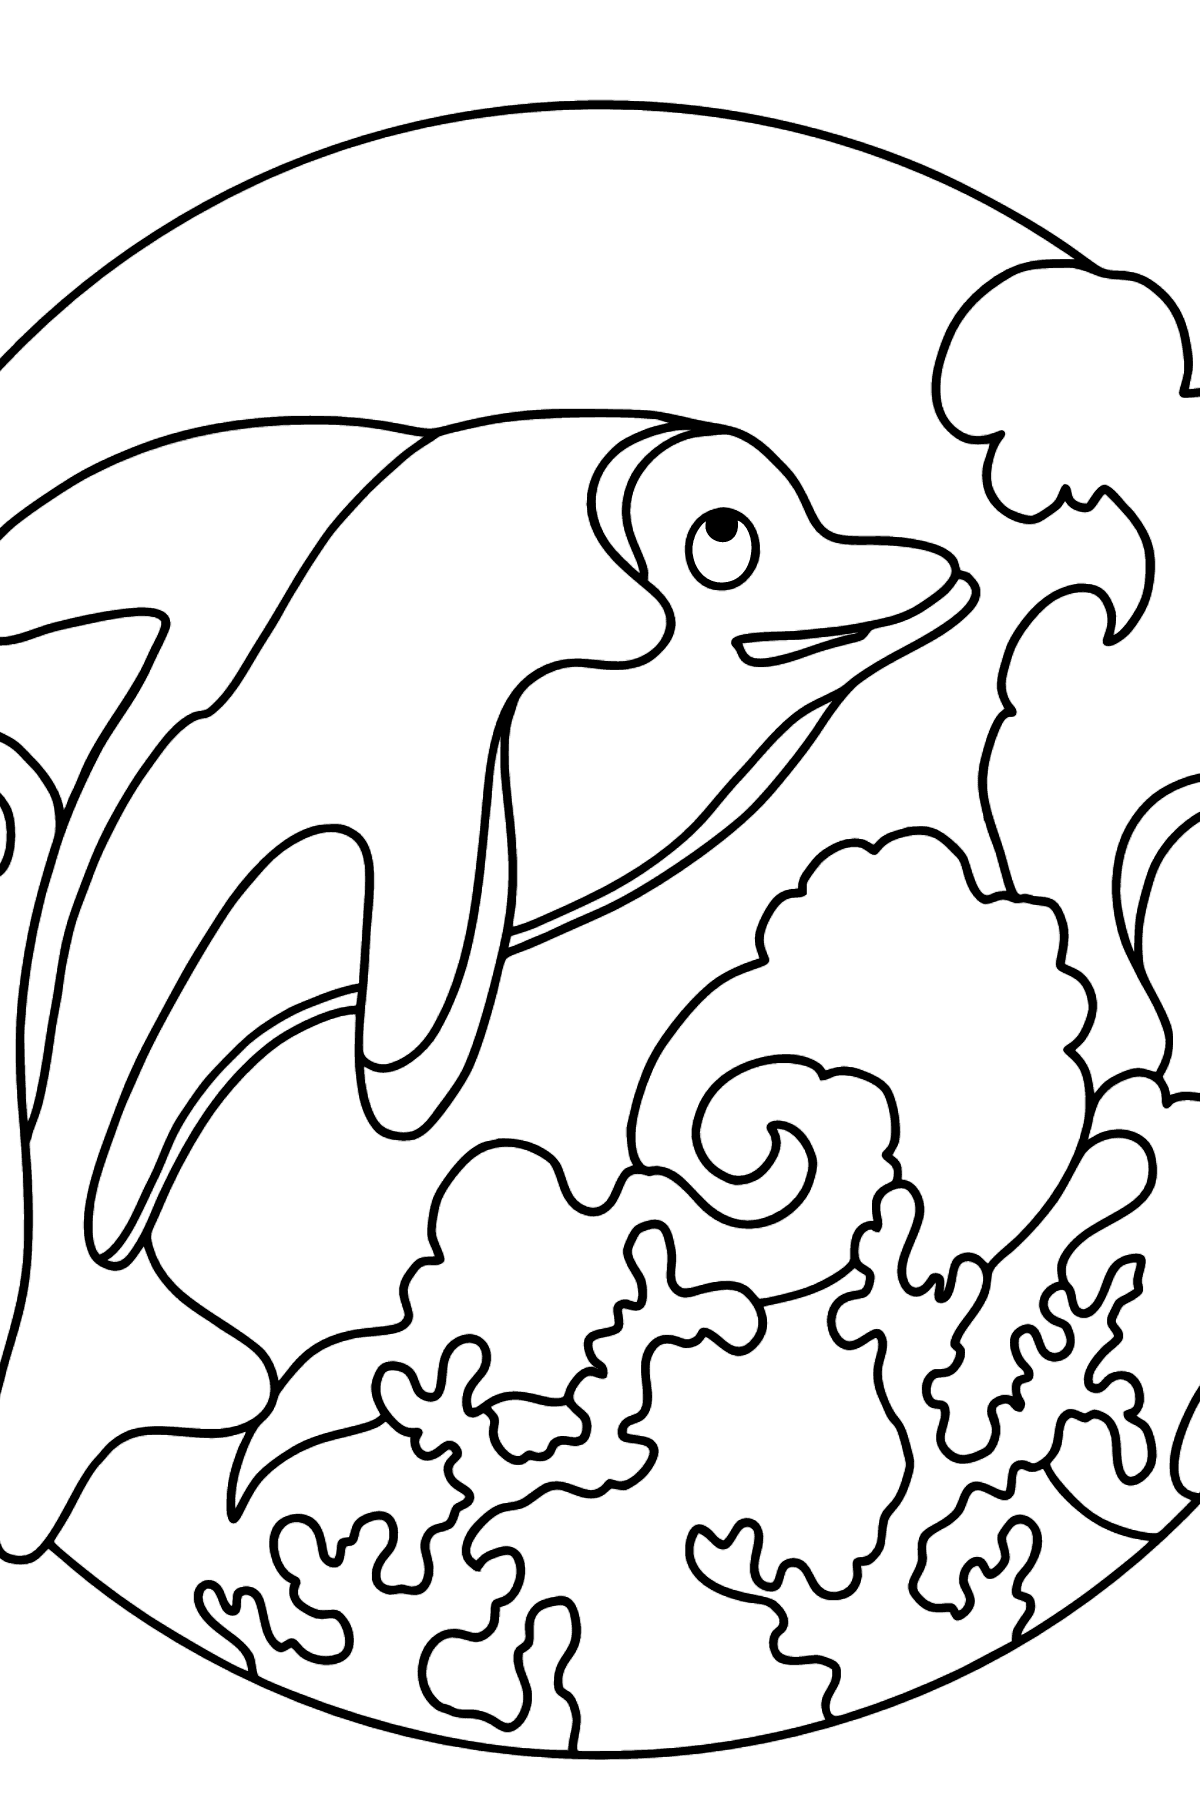 Tegning til fargelegging delfin (enkelt) - Tegninger til fargelegging for barn